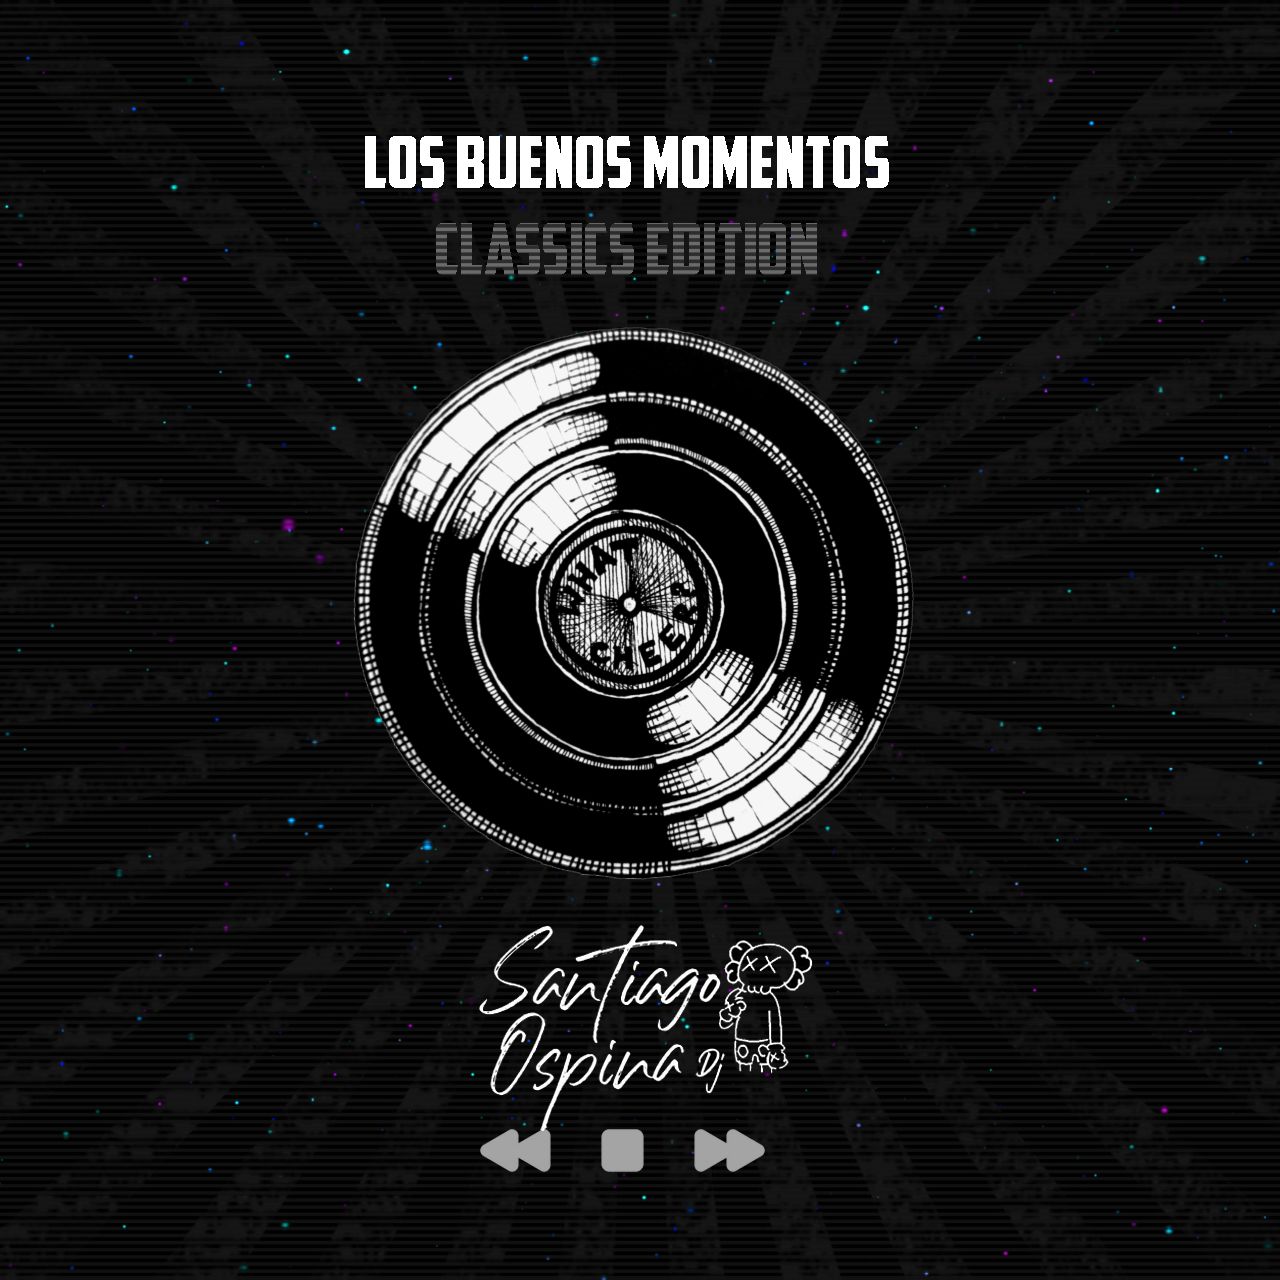 බාගත LOS BUENOS MOMENTOS - SANTIAGO OSPINA DJ